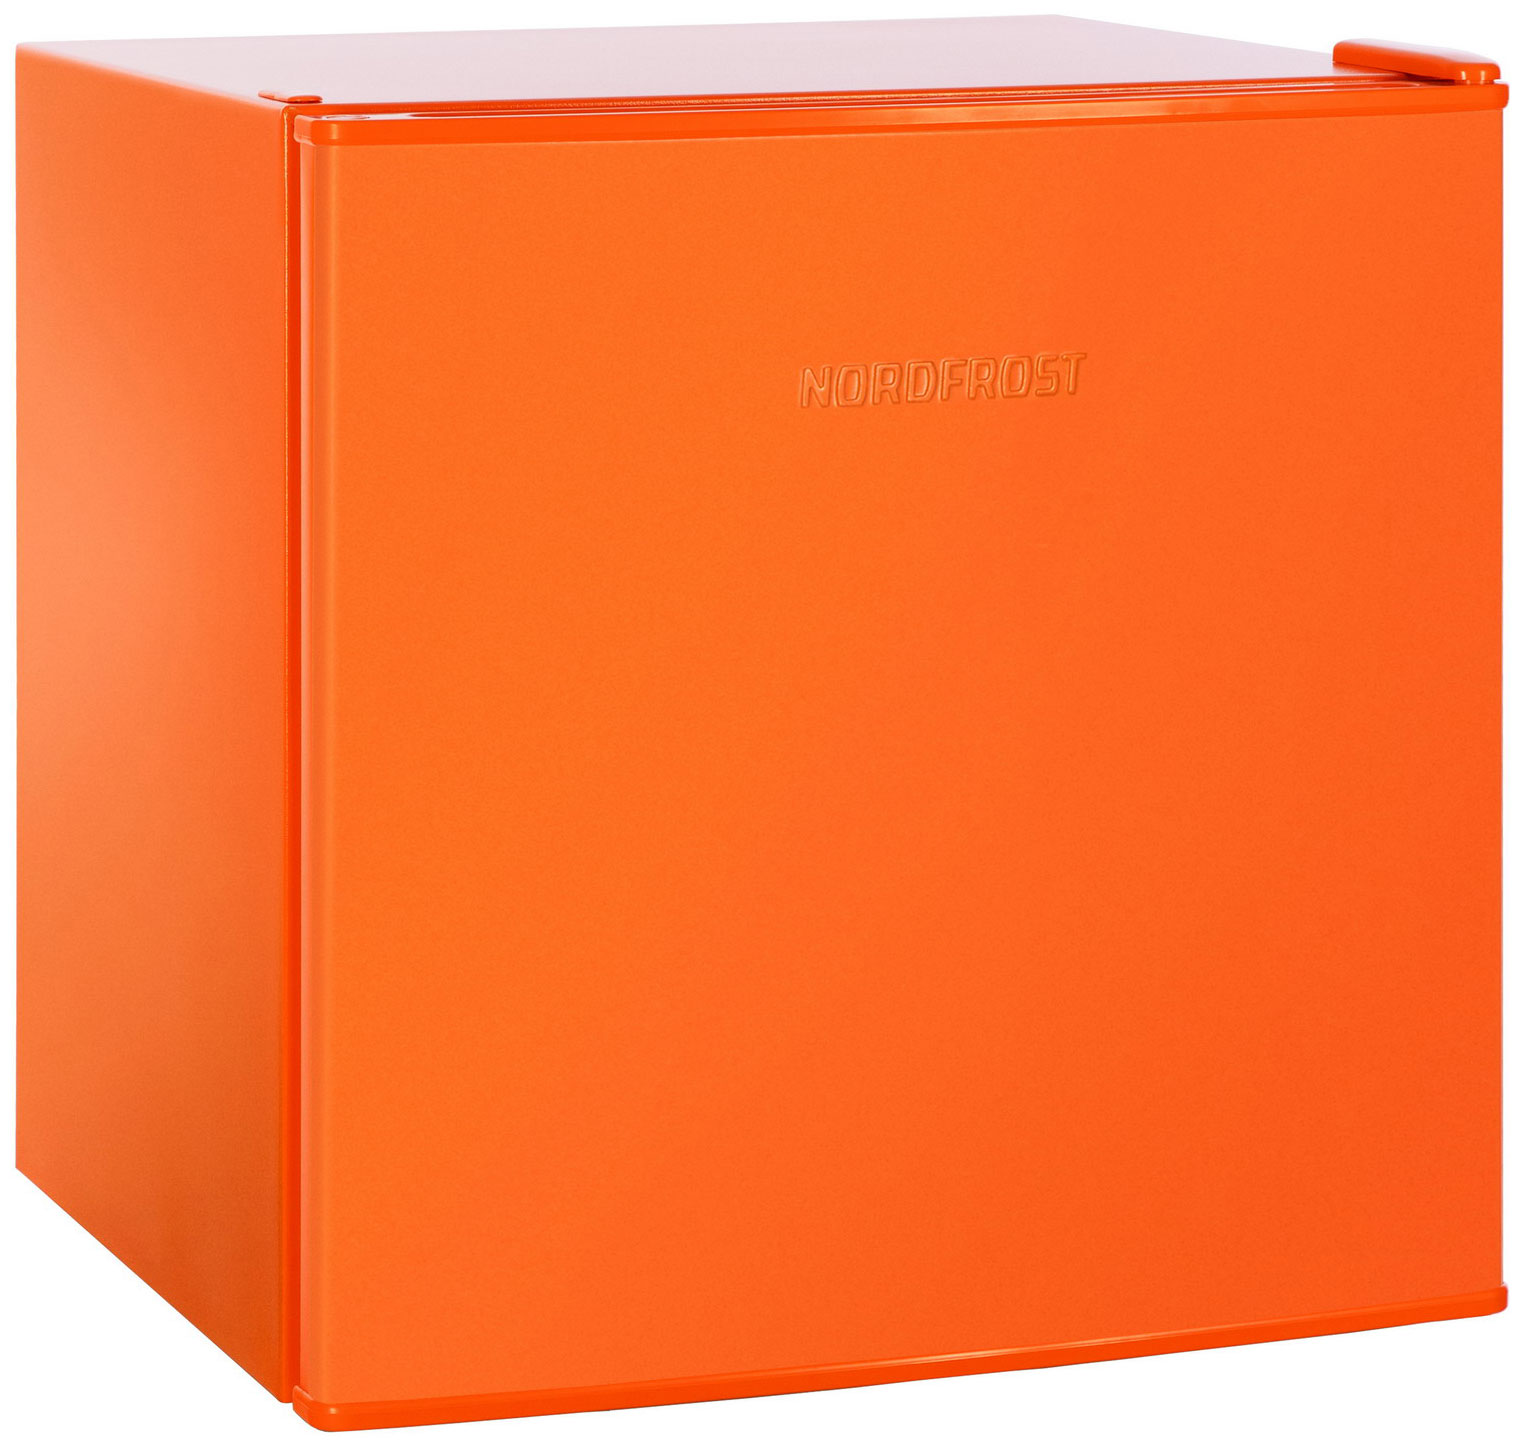 Холодильник NordFrost NR 402 оранжевый